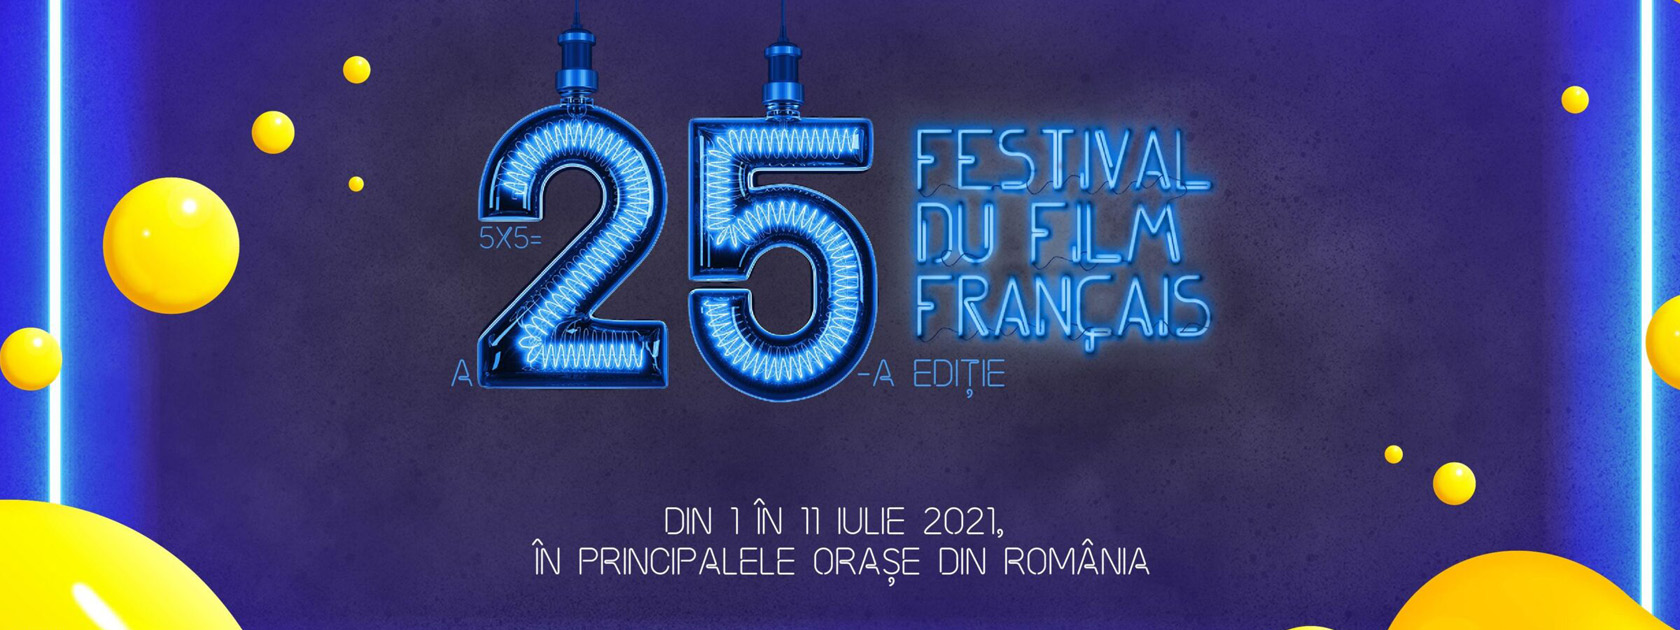 Festival du film français